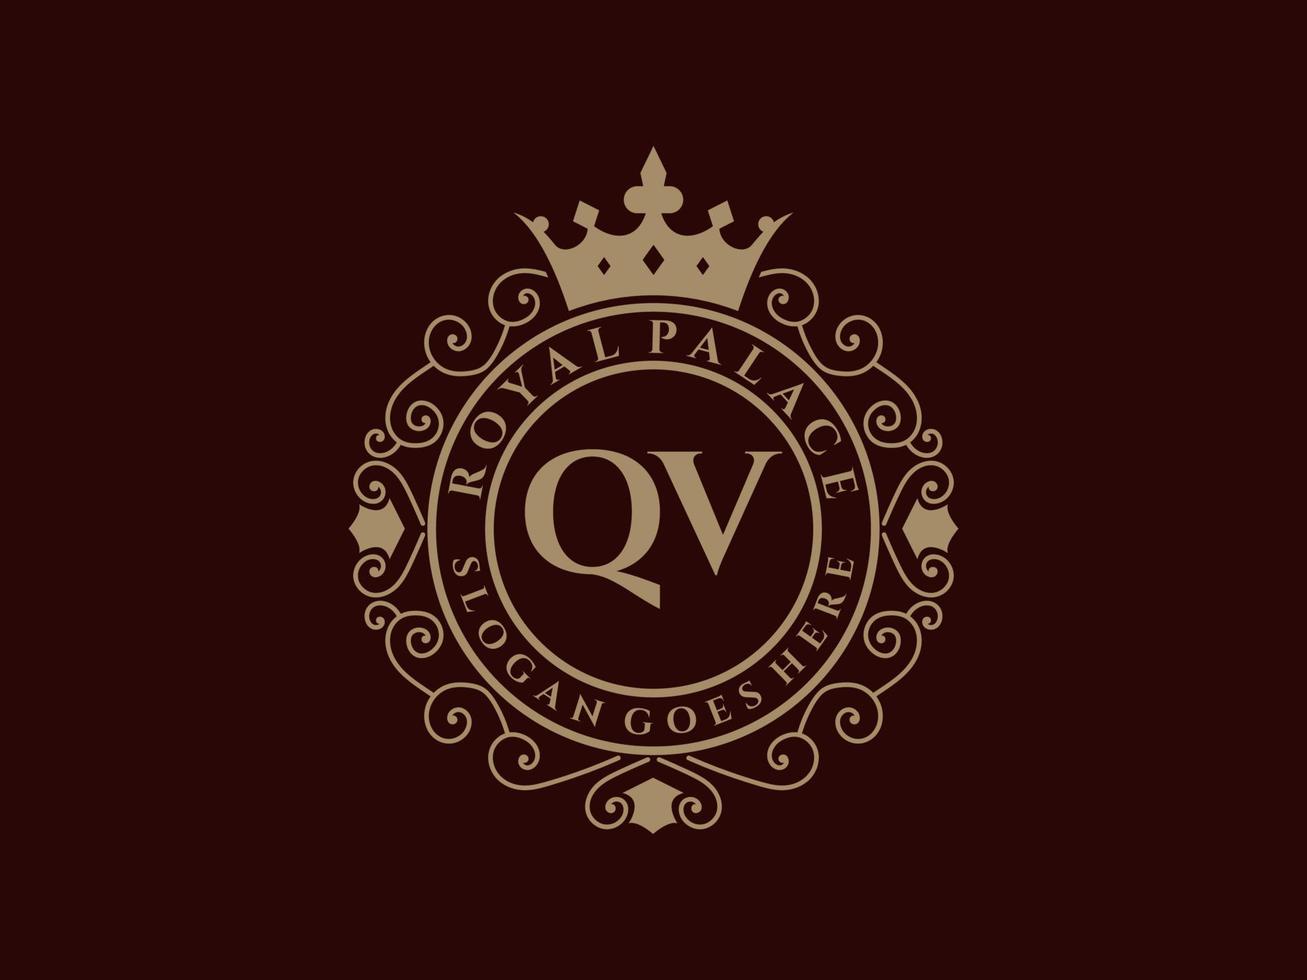 carta qv antigo logotipo vitoriano de luxo real com moldura ornamental. vetor